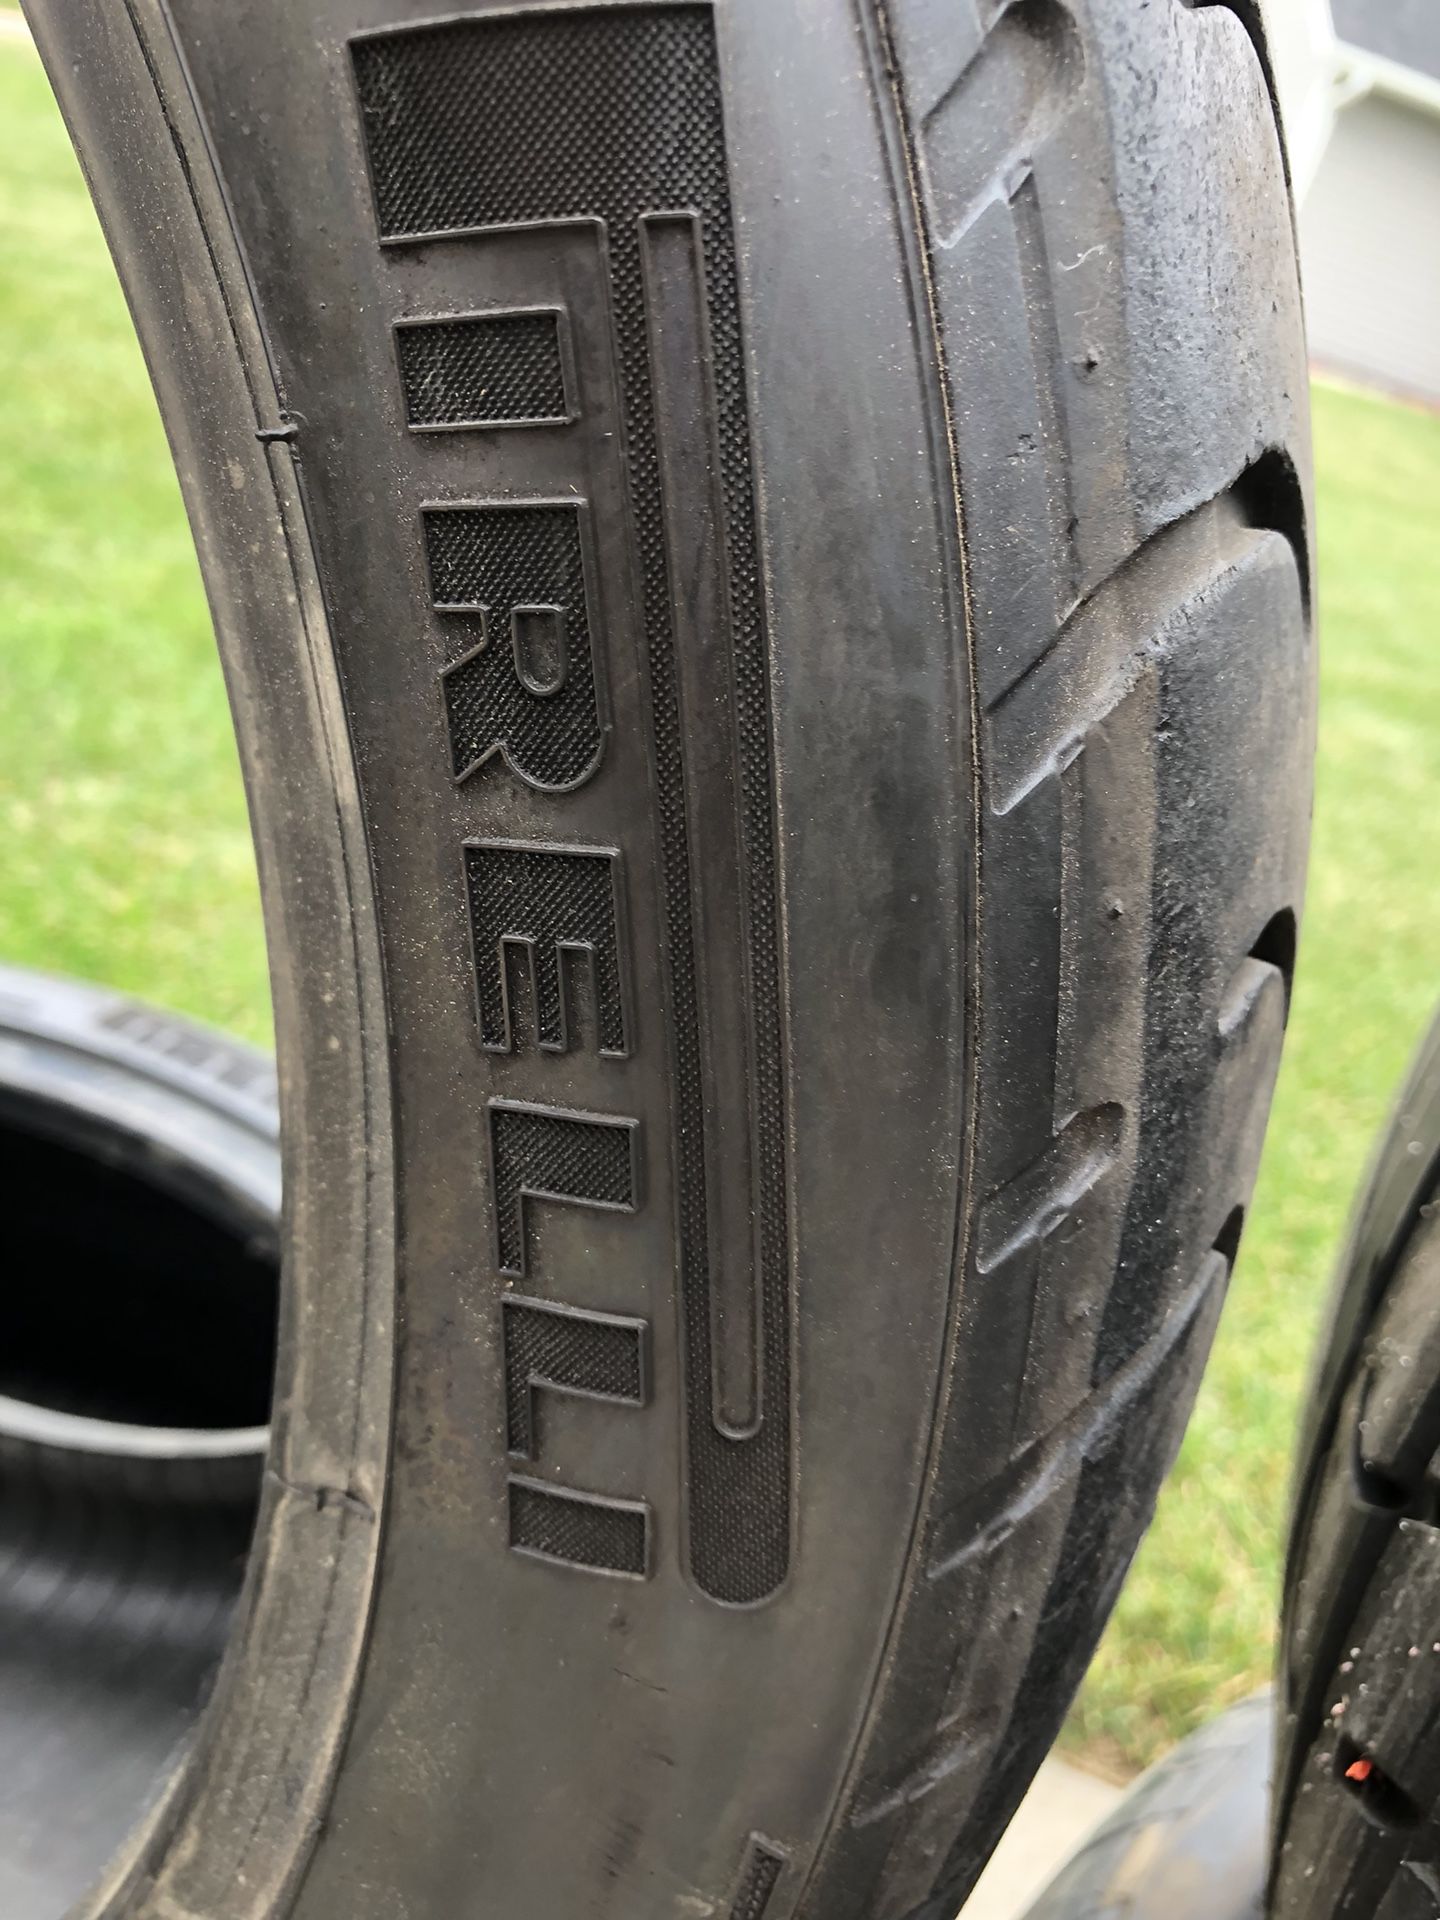 Pirelli P-zero Corsa system tires